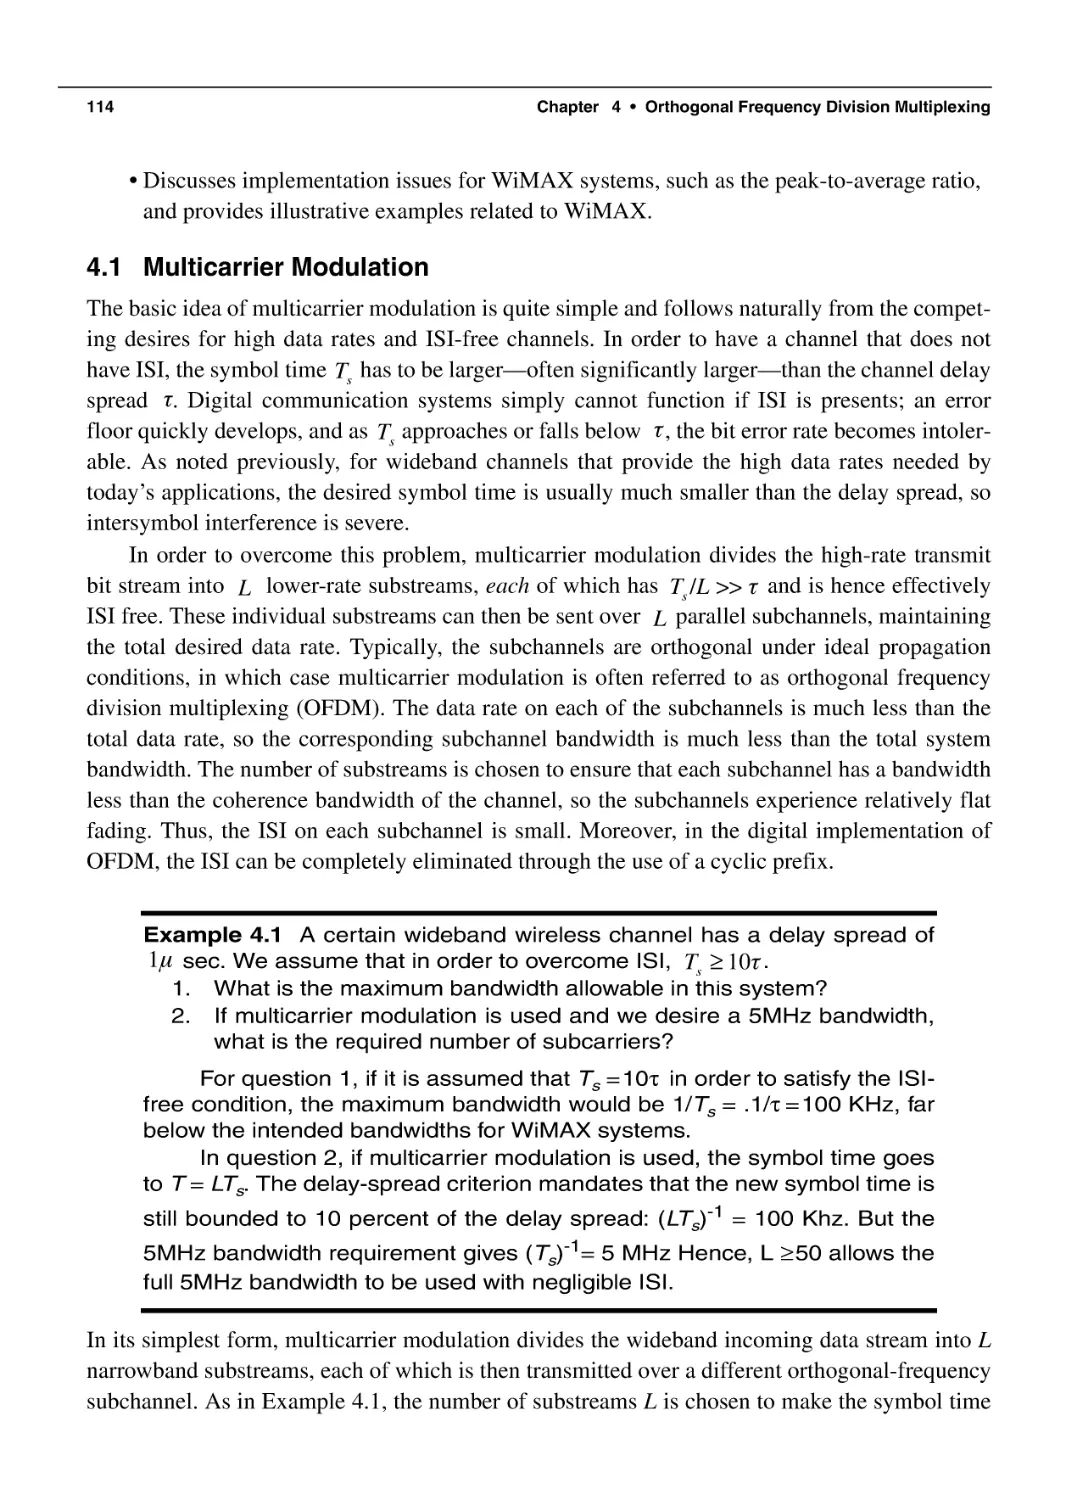 4.1 Multicarrier Modulation